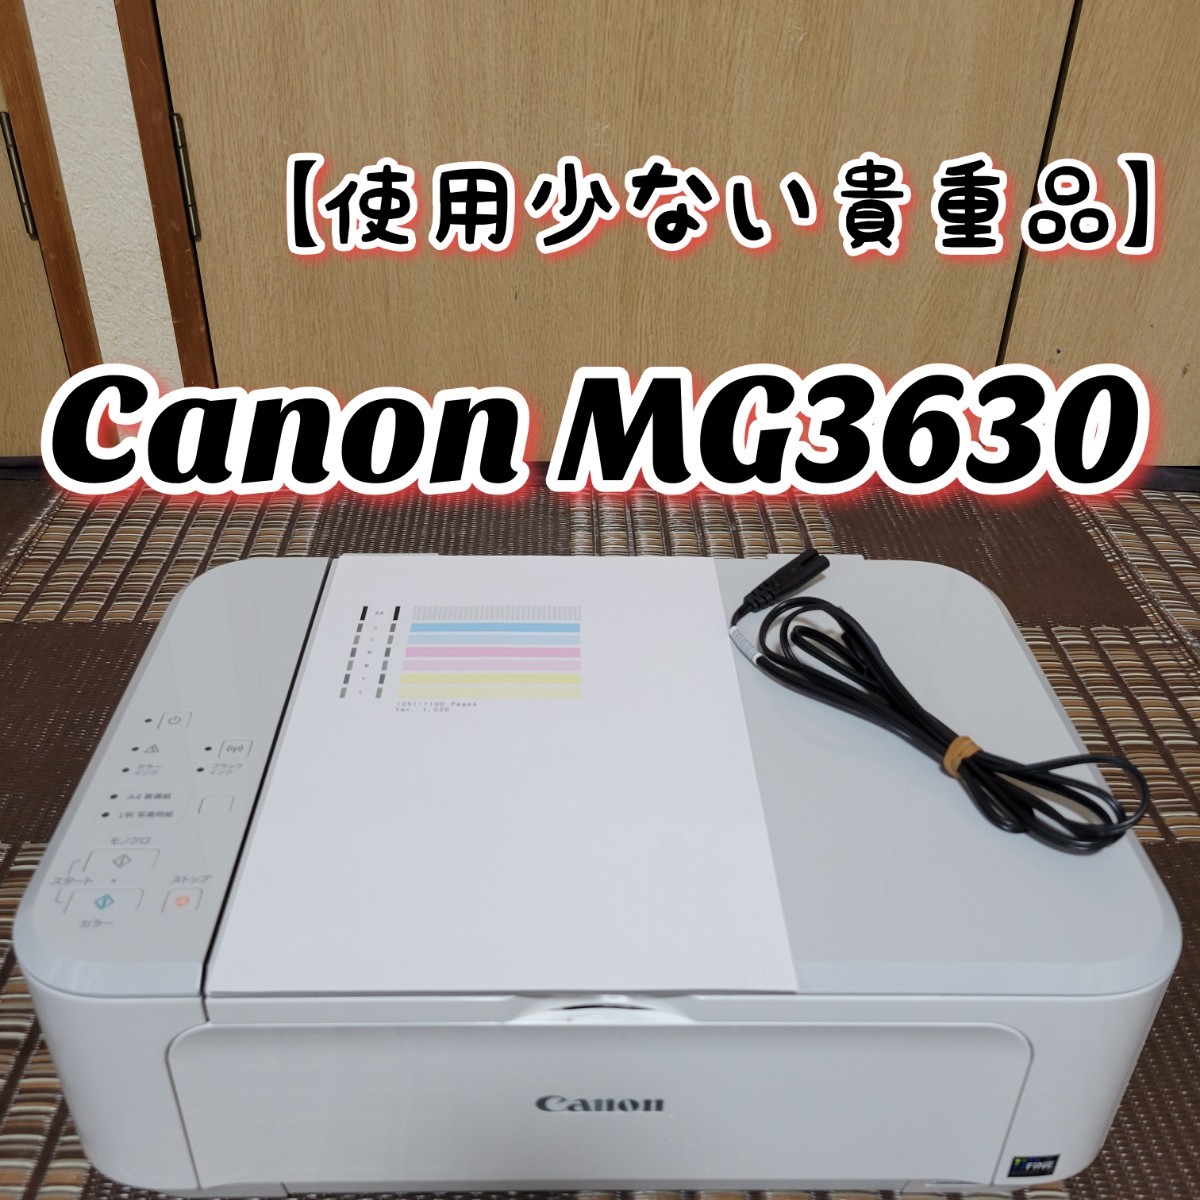 【使用少ない貴重品、特価】 Canon キヤノン PIXUS MG3630 インクジェットプリンター 複合機 キャノン